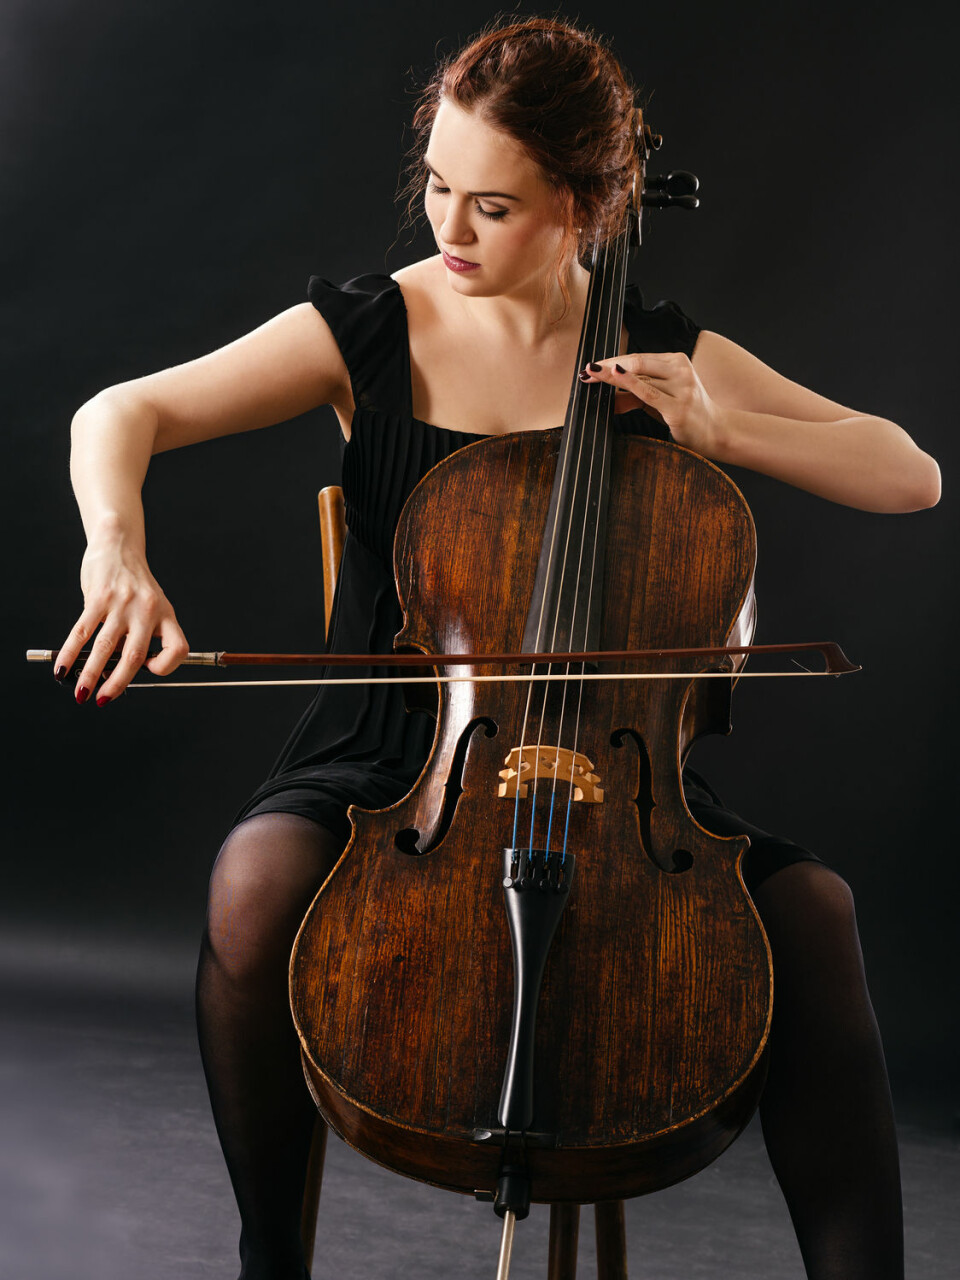 Å skreve med bena rundt en cello ble ansett som usømmelig. Derfor skulle kvinner holde seg unna dette instrumentet. (Foto: Ronald Sumners, Shutterstock, NTB scanpix)